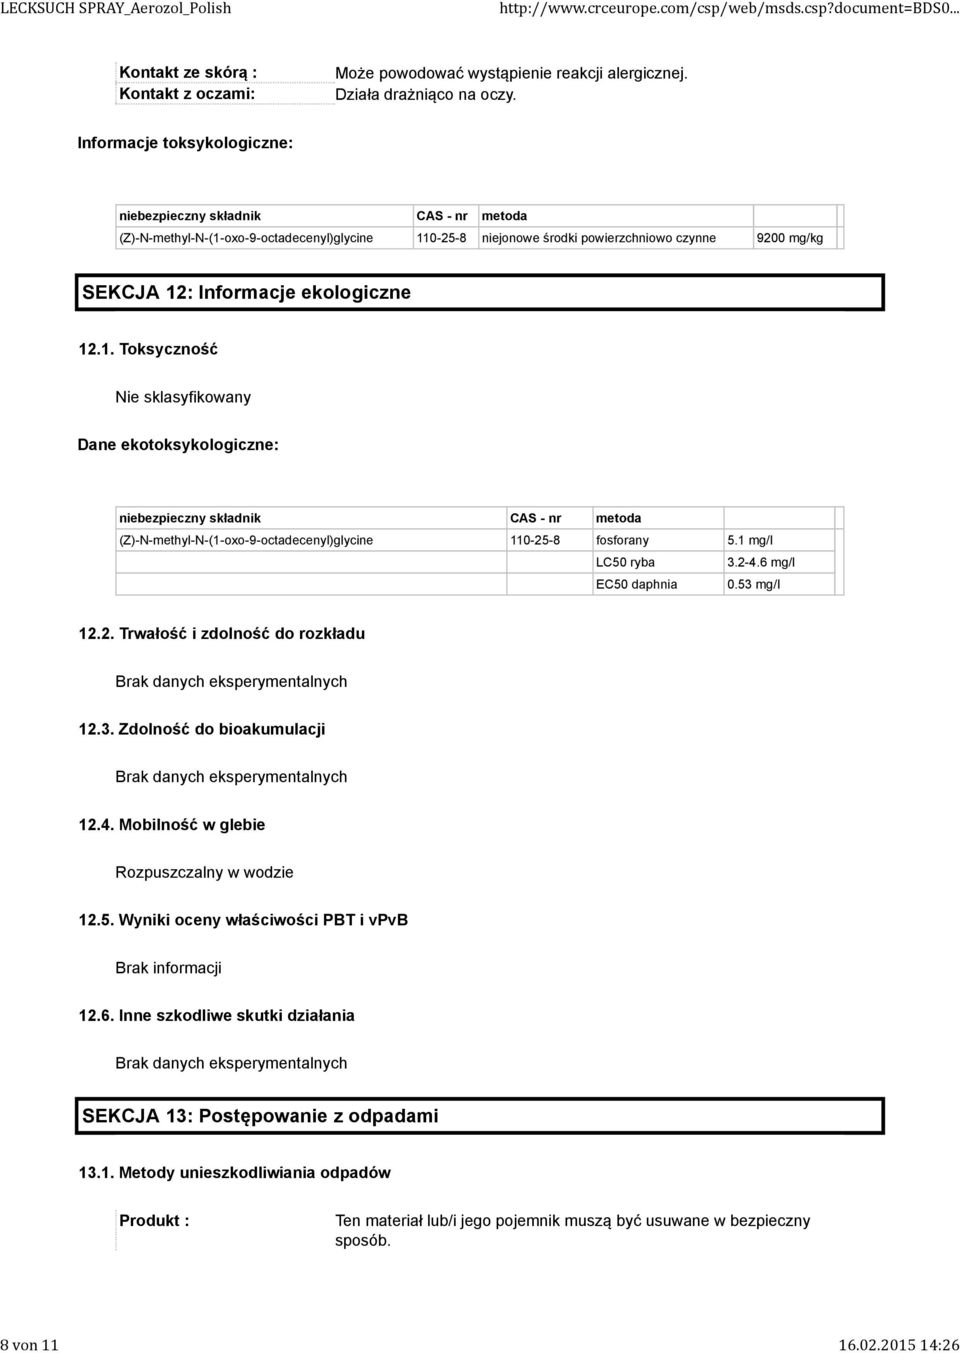 ekologiczne 12.1. Toksyczność Nie sklasyfikowany Dane ekotoksykologiczne: niebezpieczny składnik CAS - nr metoda (Z)-N-methyl-N-(1-oxo-9-octadecenyl)glycine 110-25-8 fosforany 5.1 mg/l LC50 ryba 3.